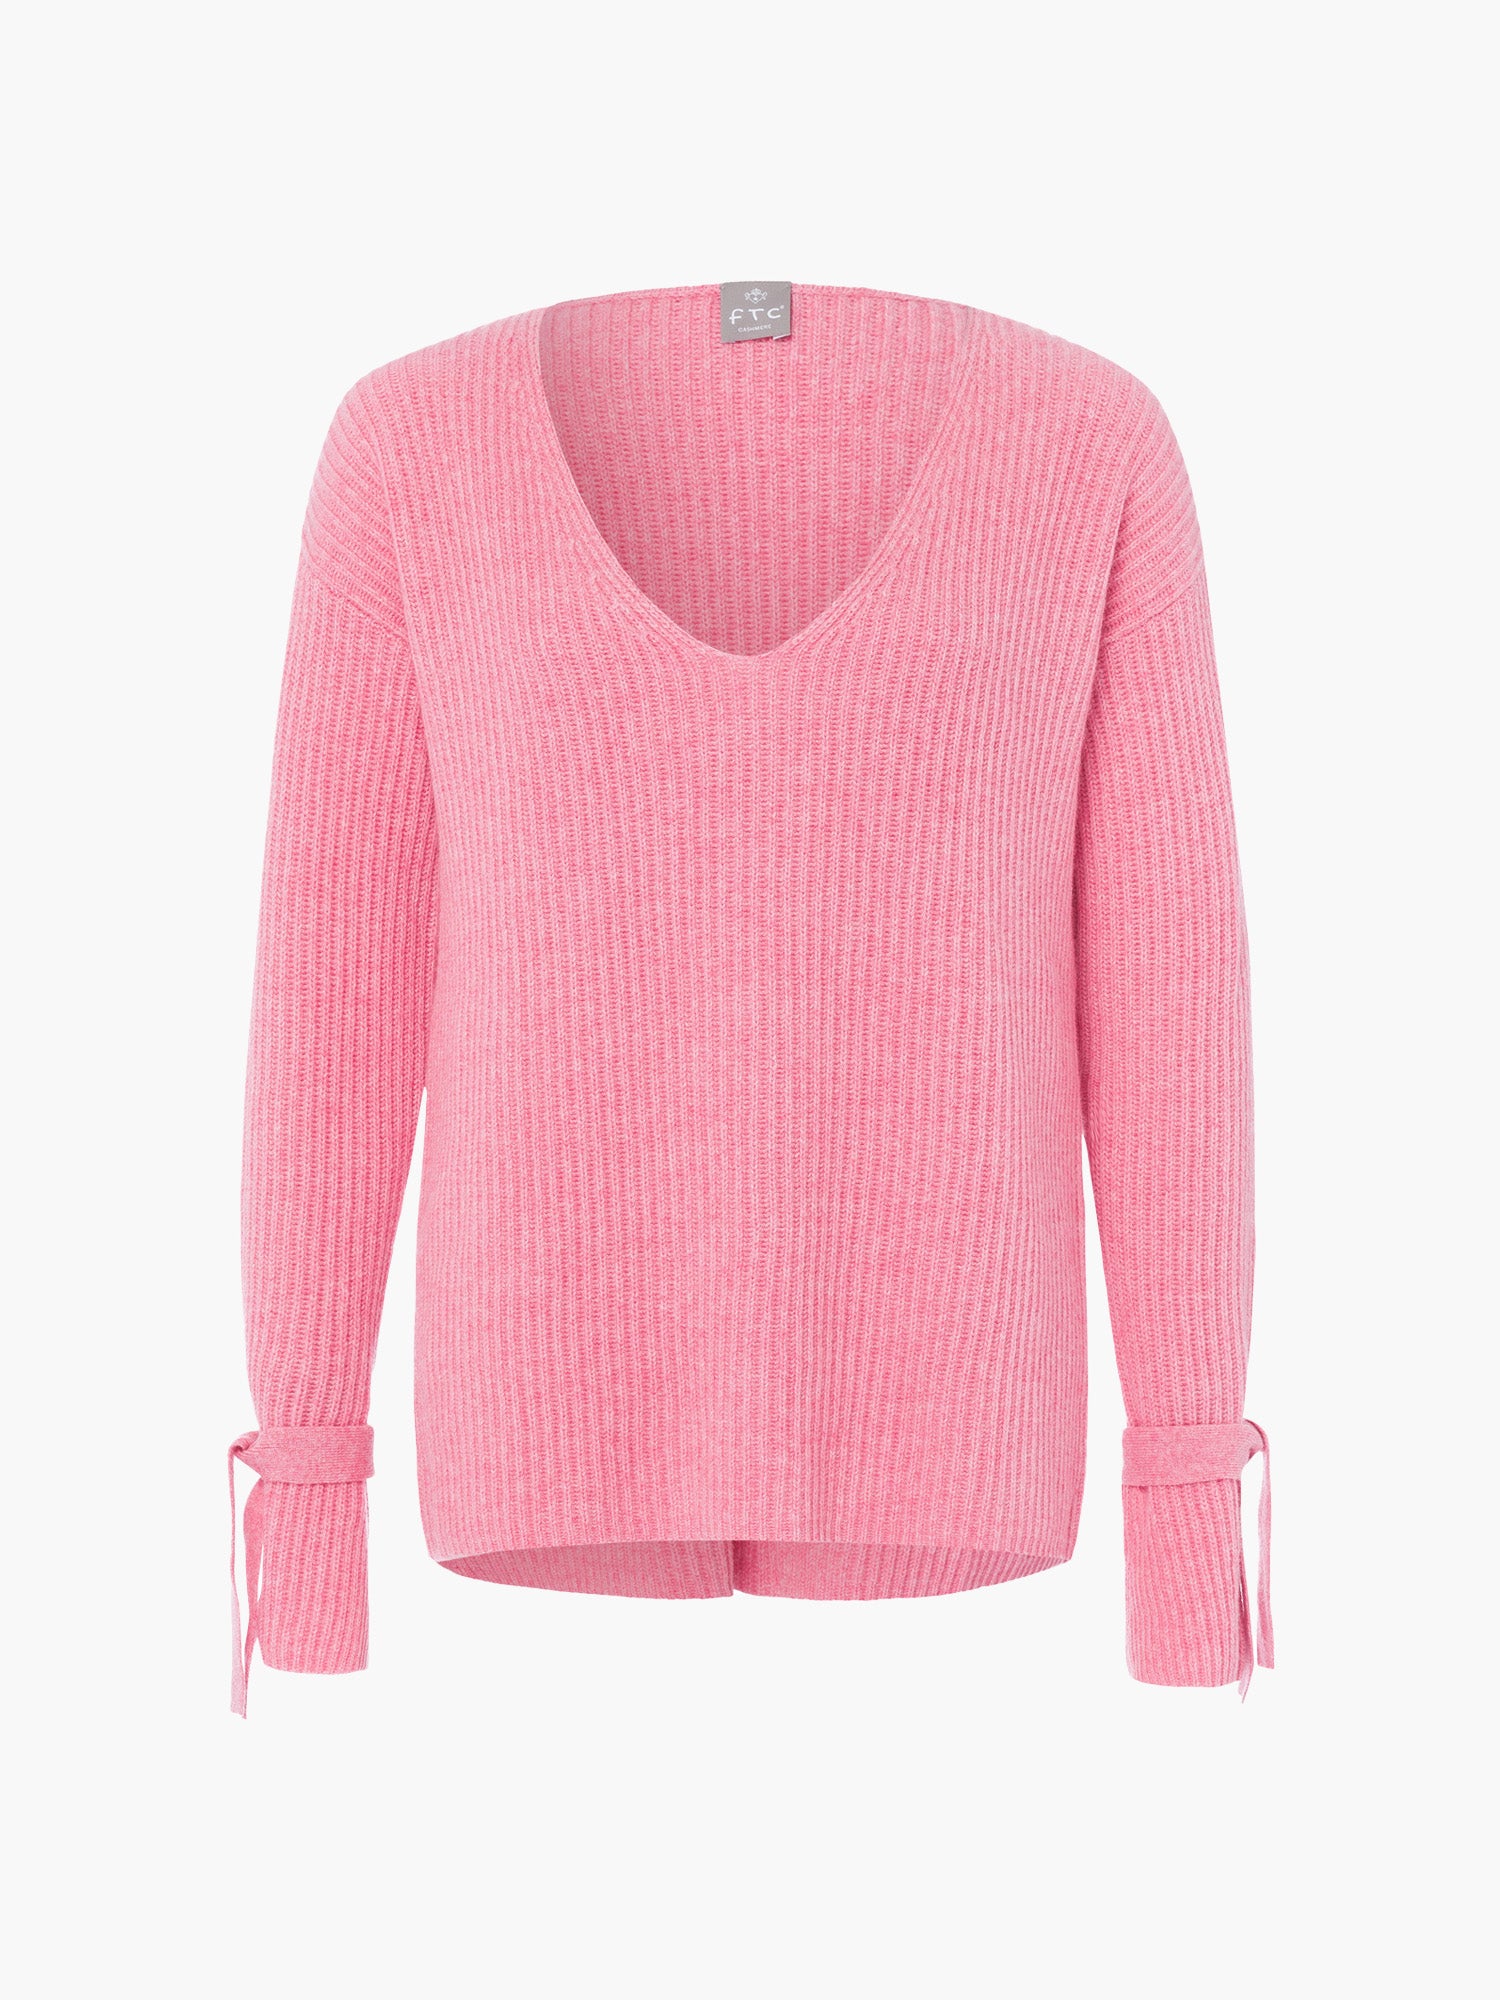 Свитер ВН FTC Cashmere, цвет pink lemonade свитер роллнек ftc cashmere темно серый